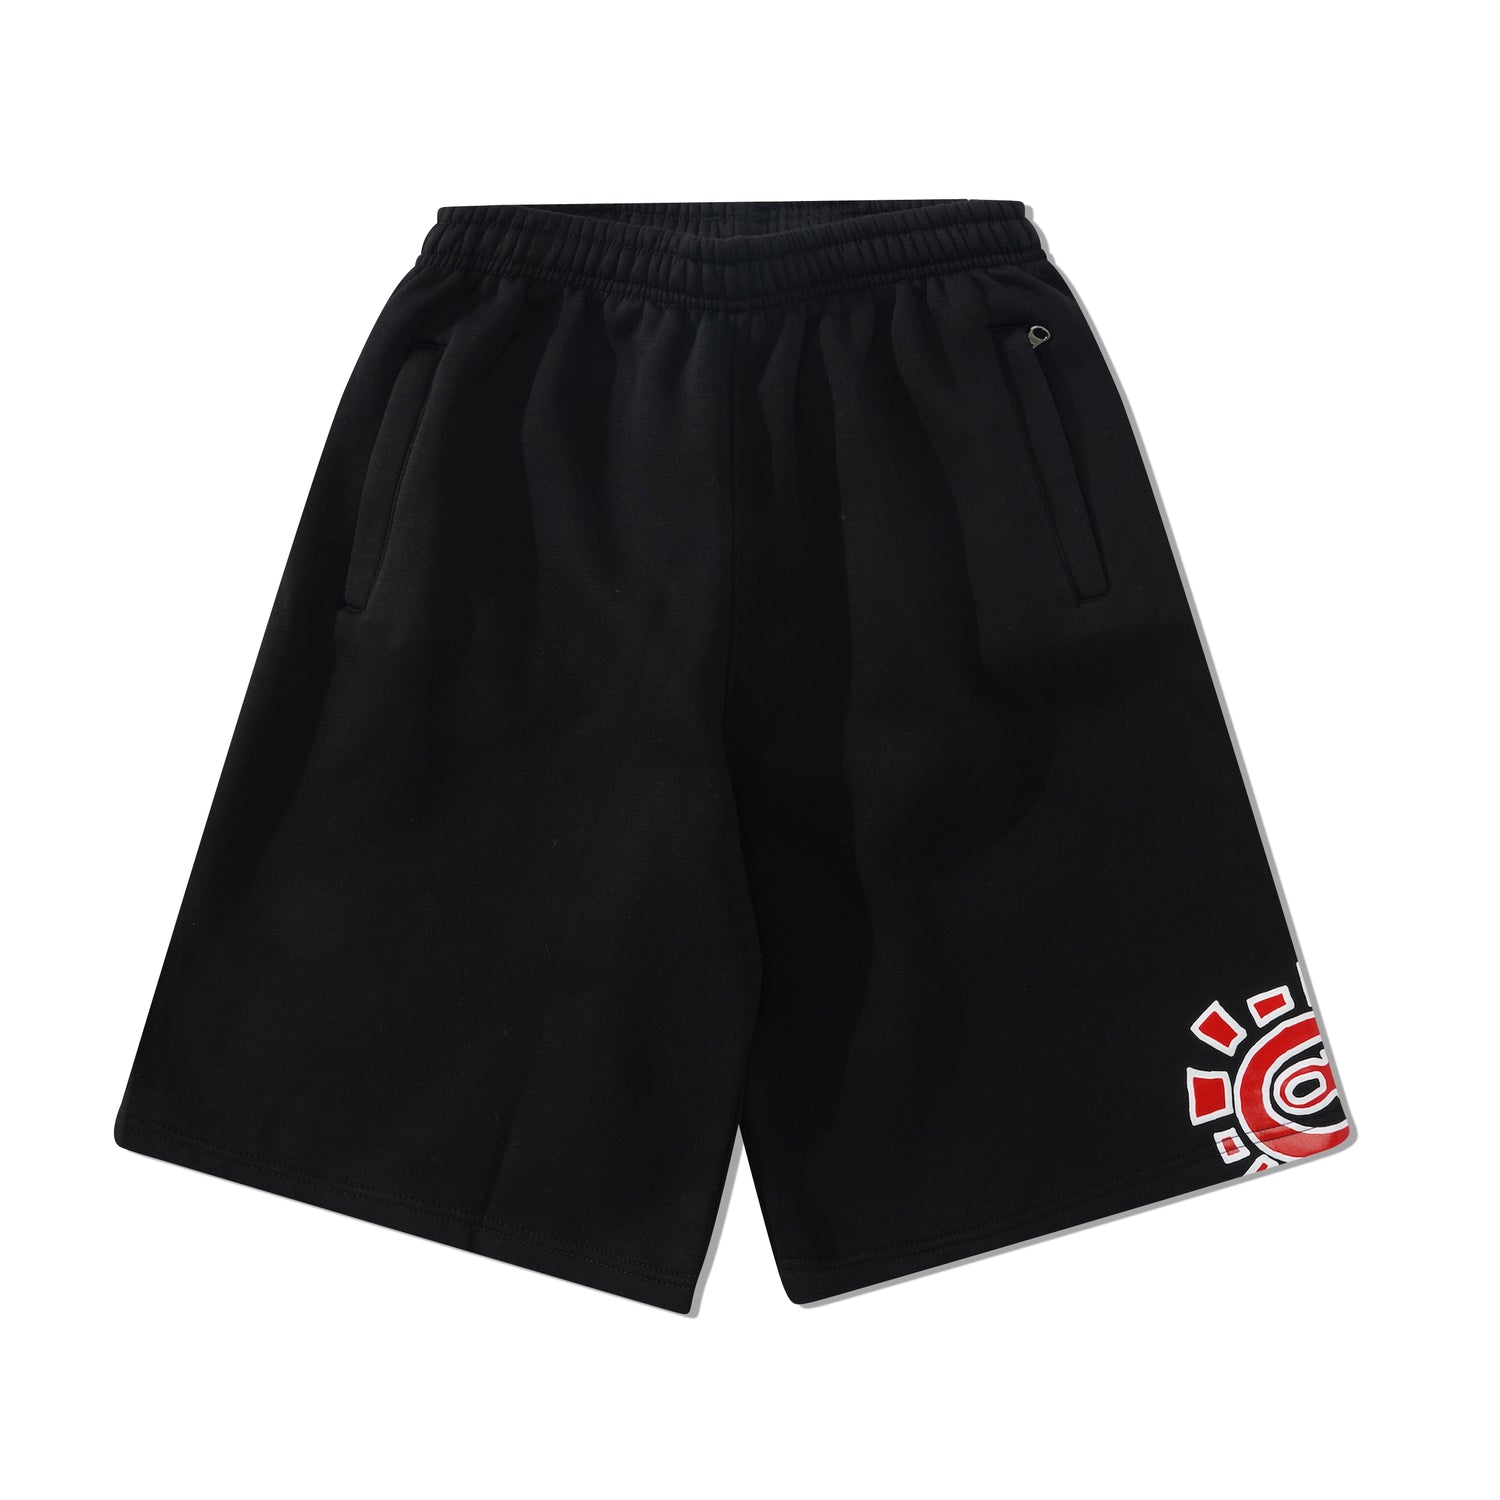 @sun Jogger Shorts, Black